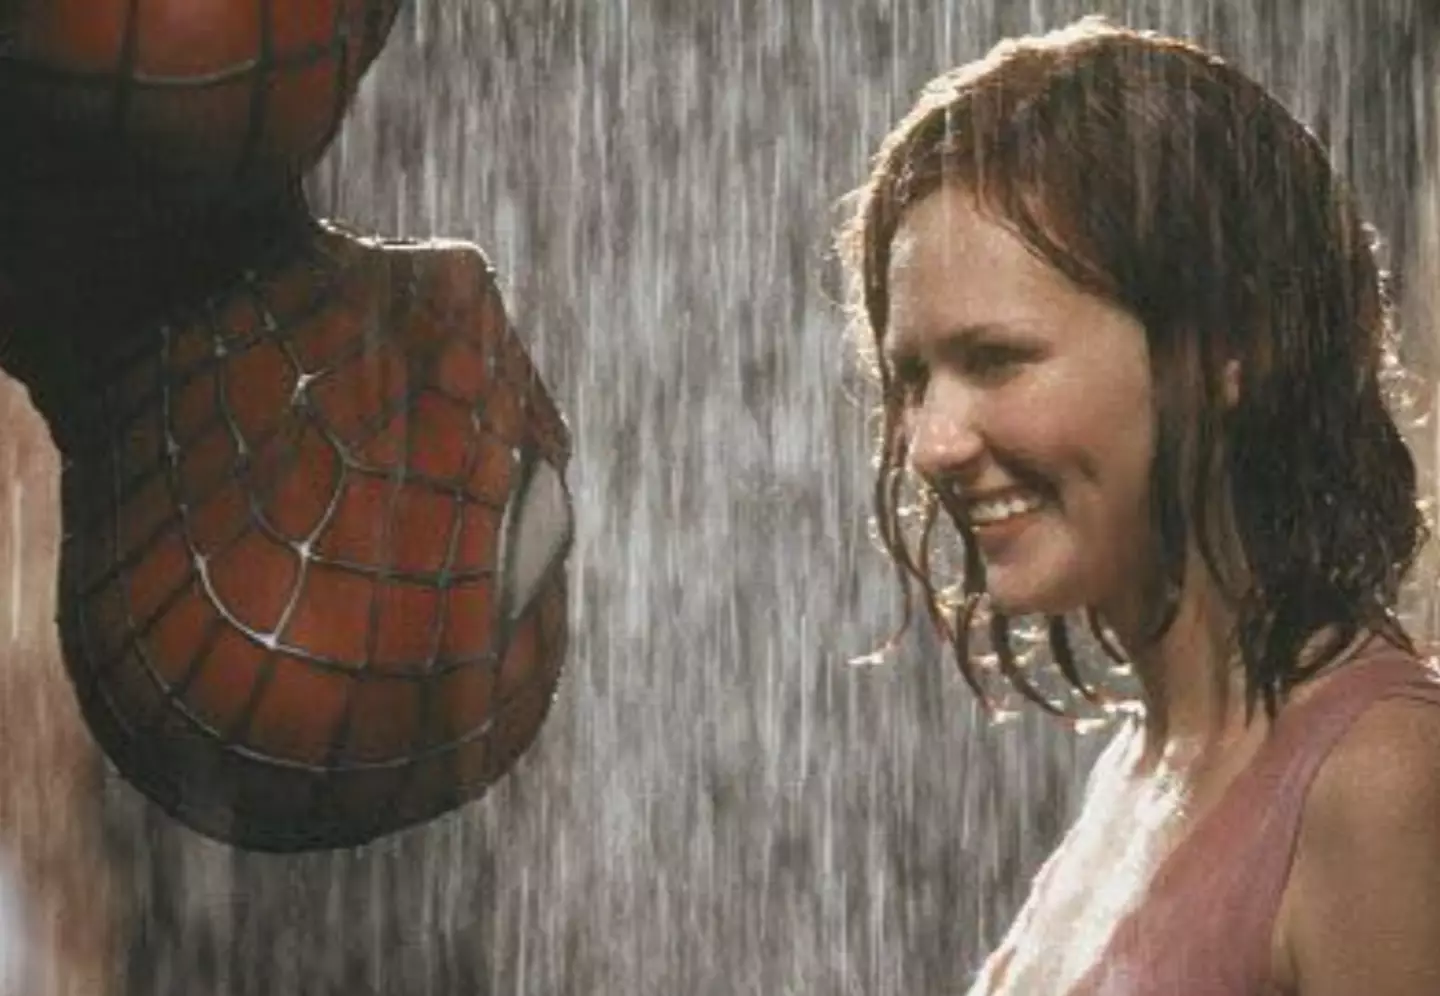 Kirsten Dunst starred in the original Spider-Man movies.